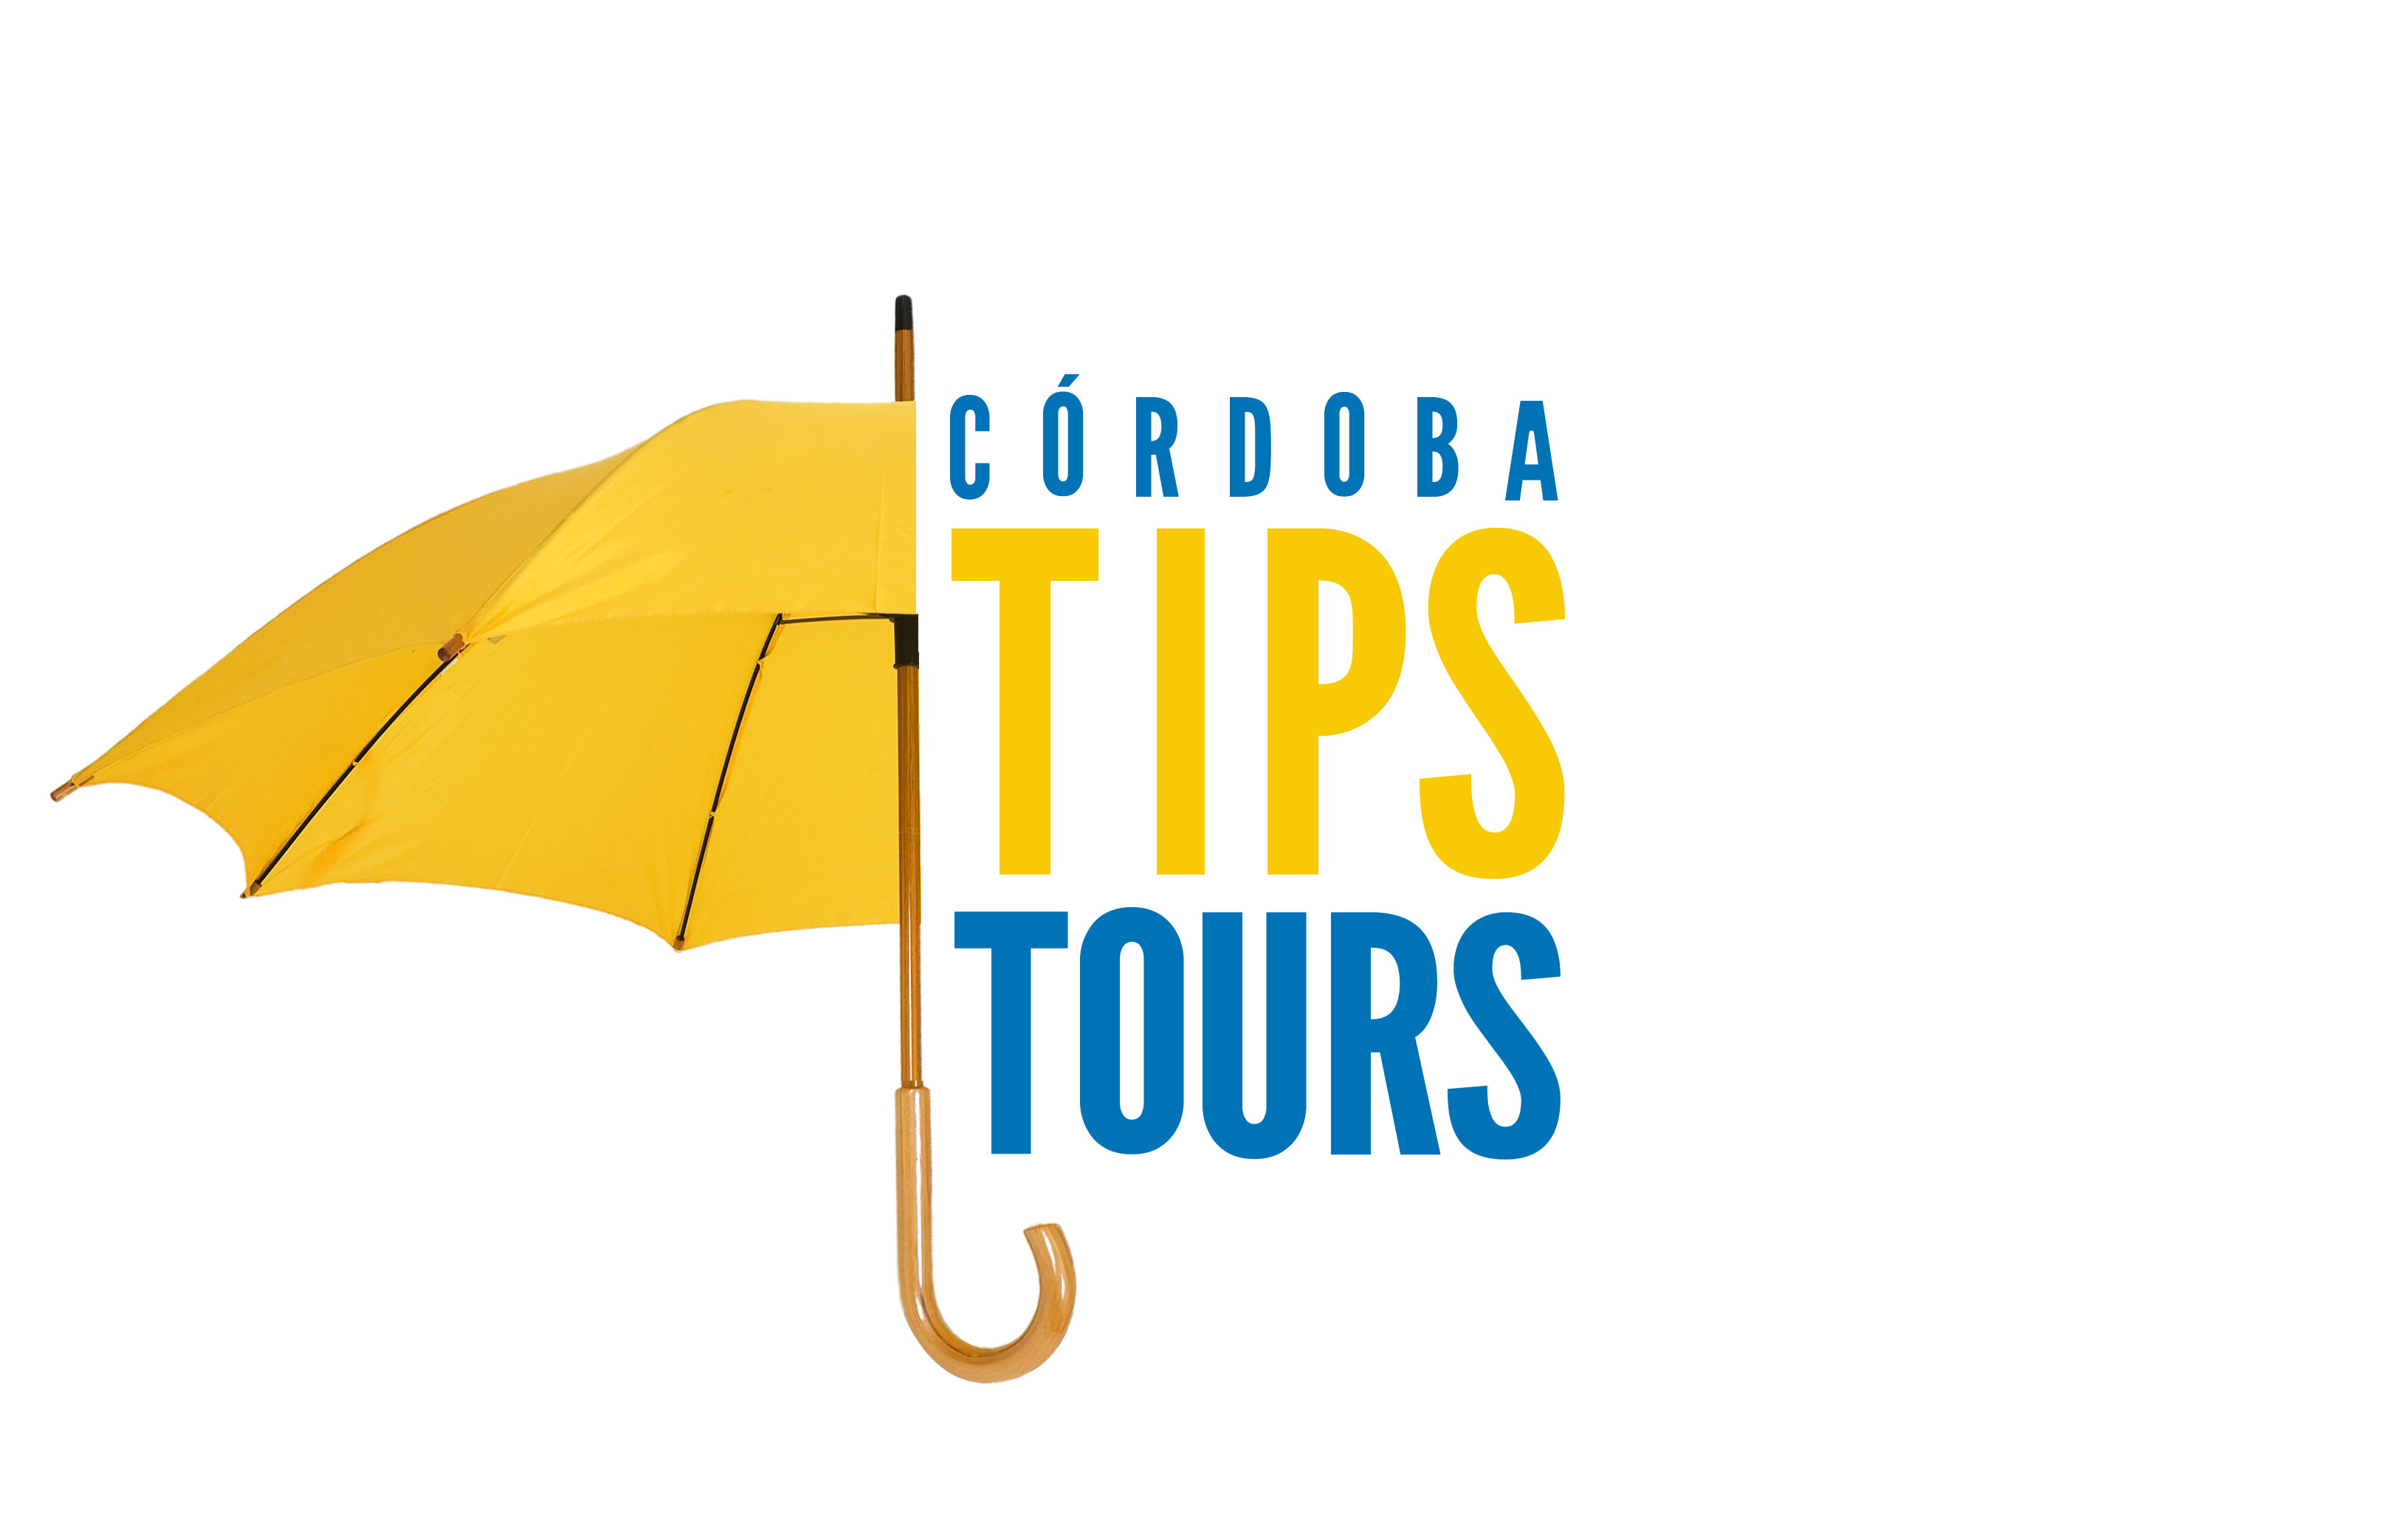 Cordoba Tips Tours